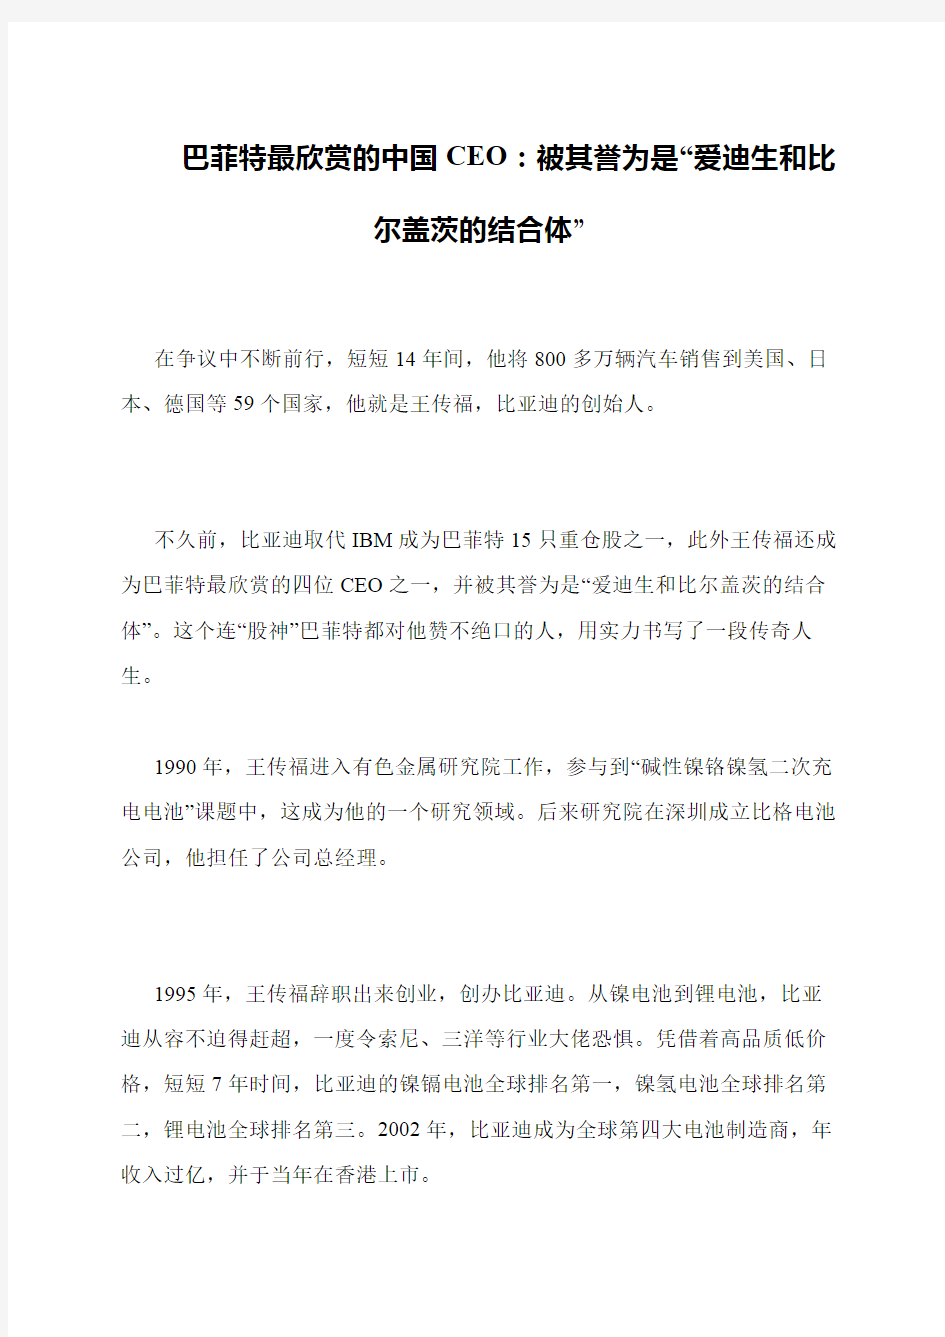 巴菲特最欣赏的中国CEO：被其誉为是“爱迪生和比尔盖茨的结合体”